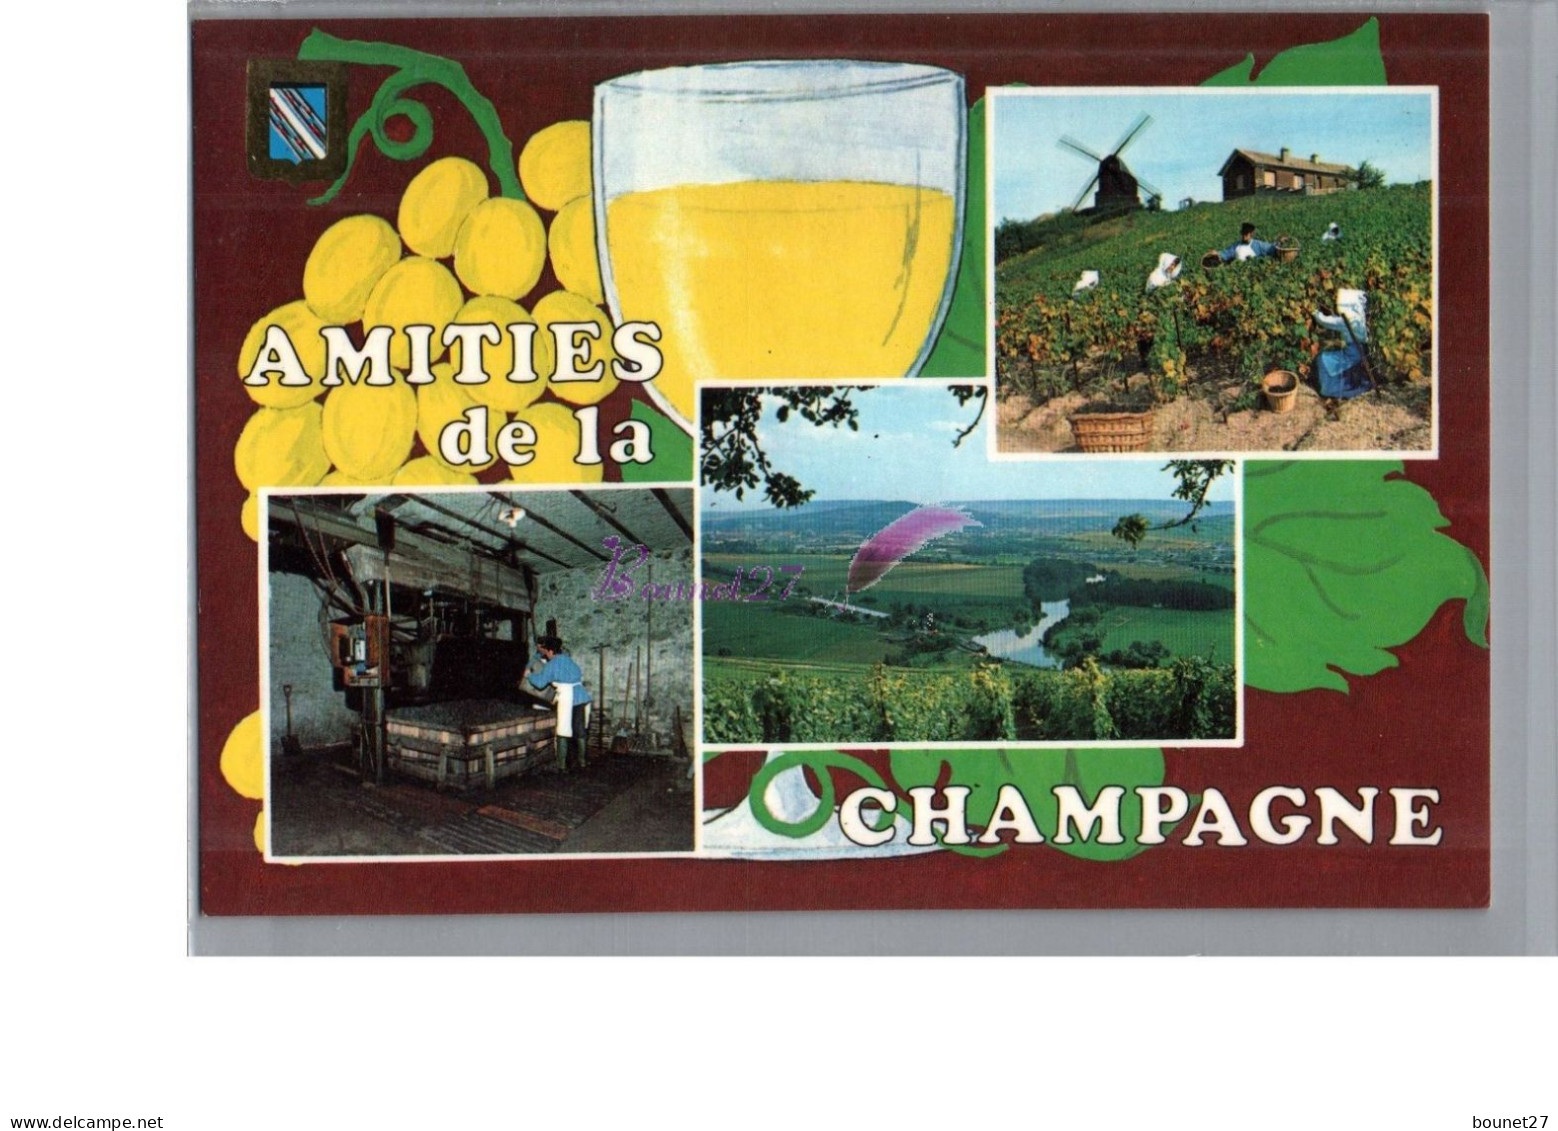 CHAMPAGNE - Amitiés De La Champagne Moulin à Vent Raisin Verre Vigne Vigneron Fabrique Carte Vierge - Champagne - Ardenne